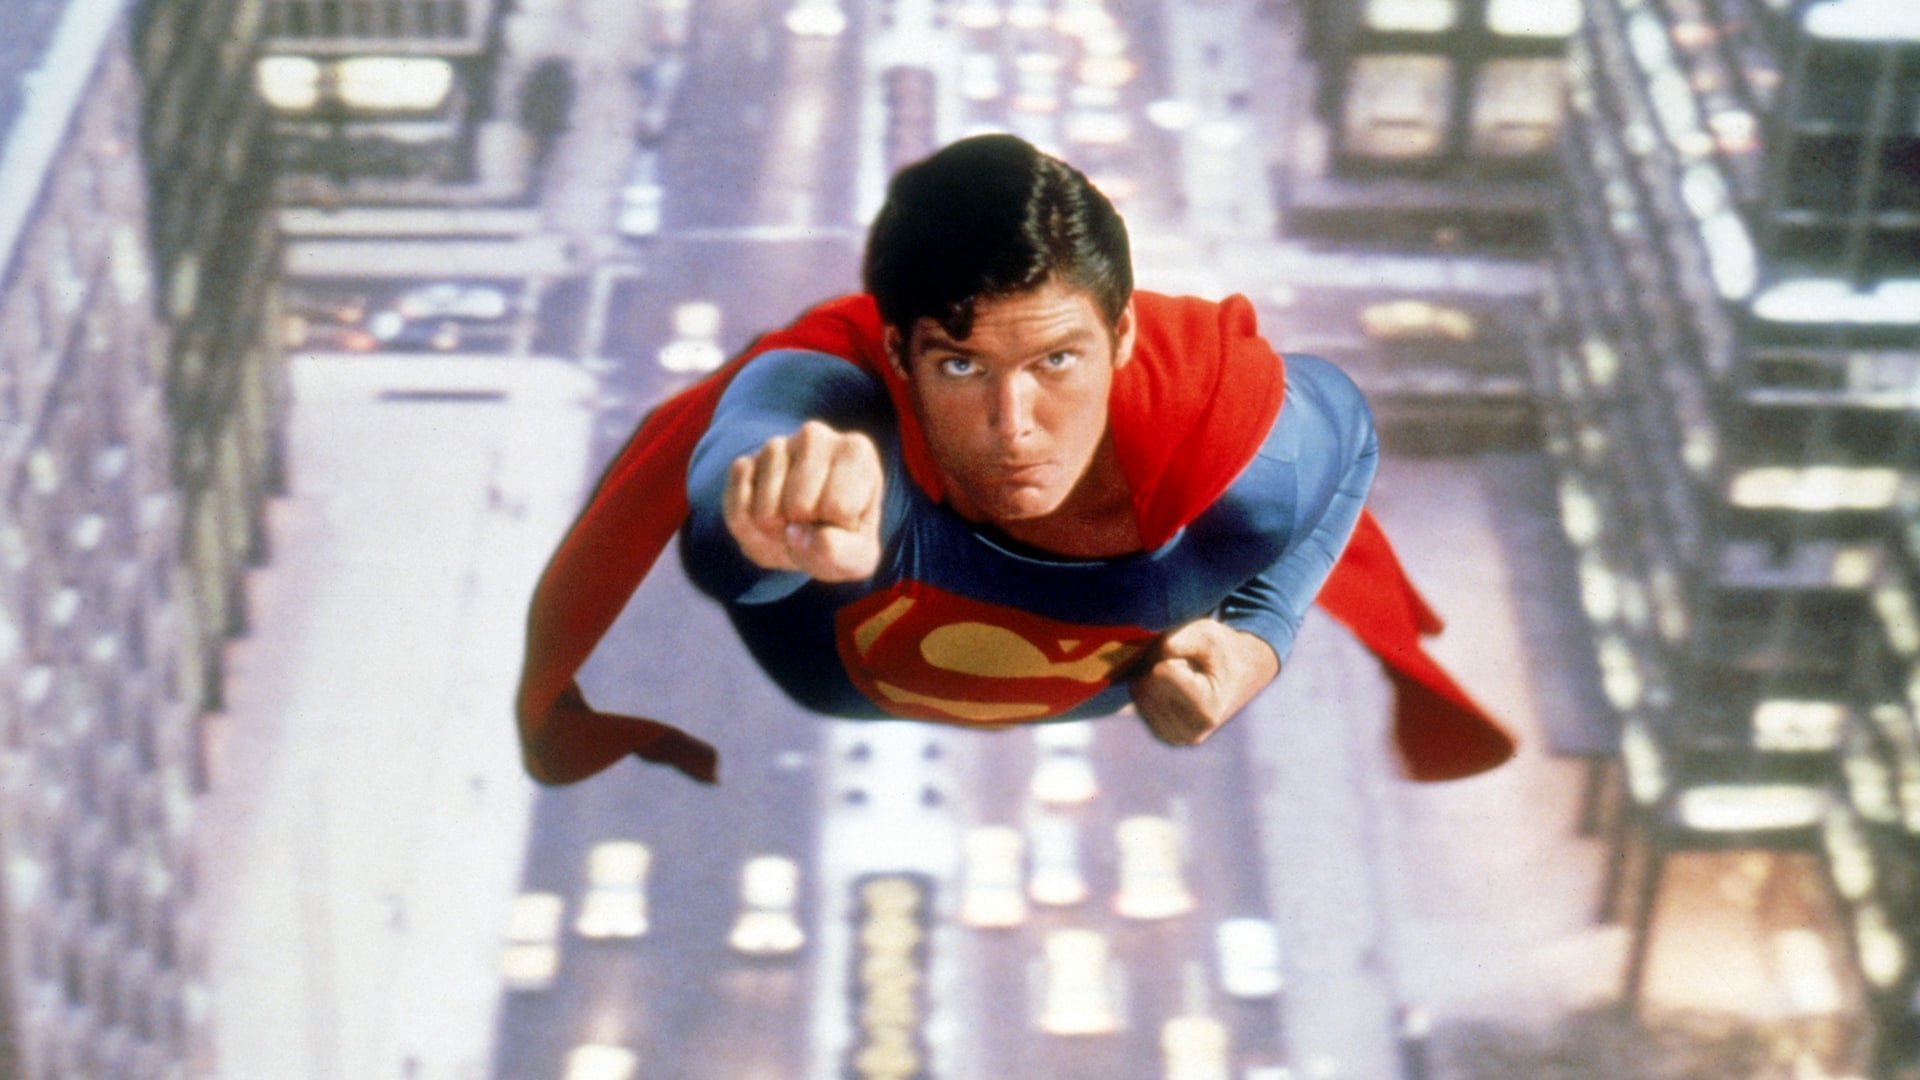 کریستوفر ریو در نقش مرد فولادی در سوپرمن محصول سال 1978